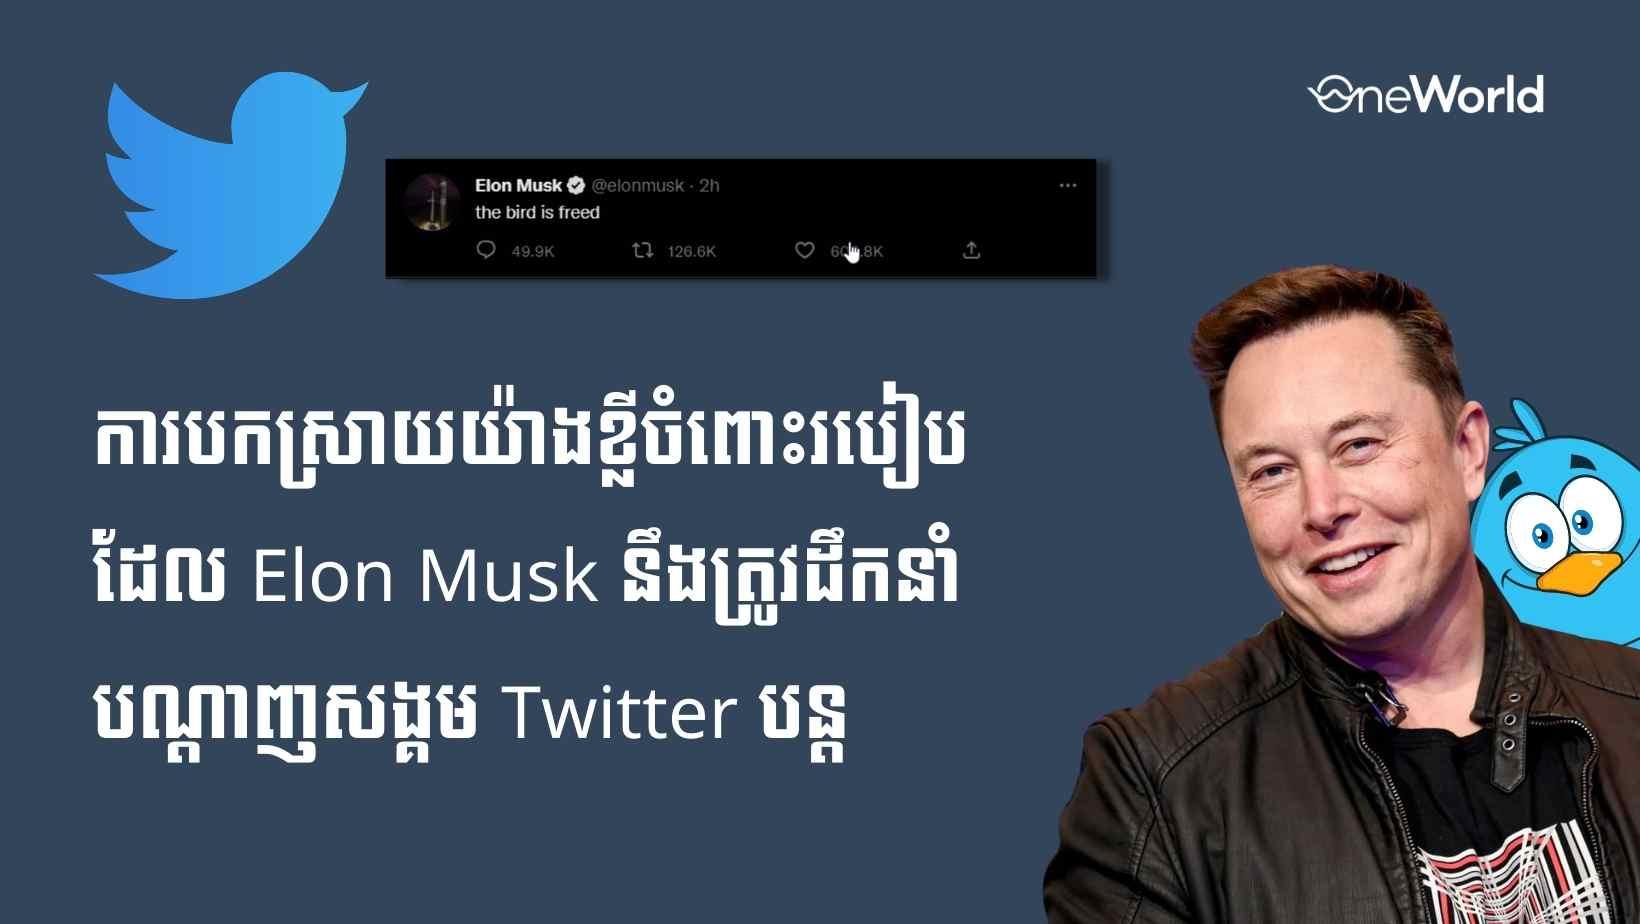 ការបកស្រាយយ៉ាងខ្លីចំពោះរបៀបដែល Elon Musk នឹងត្រូវដឹកនាំបណ្តាញសង្គម Twitter បន្ត